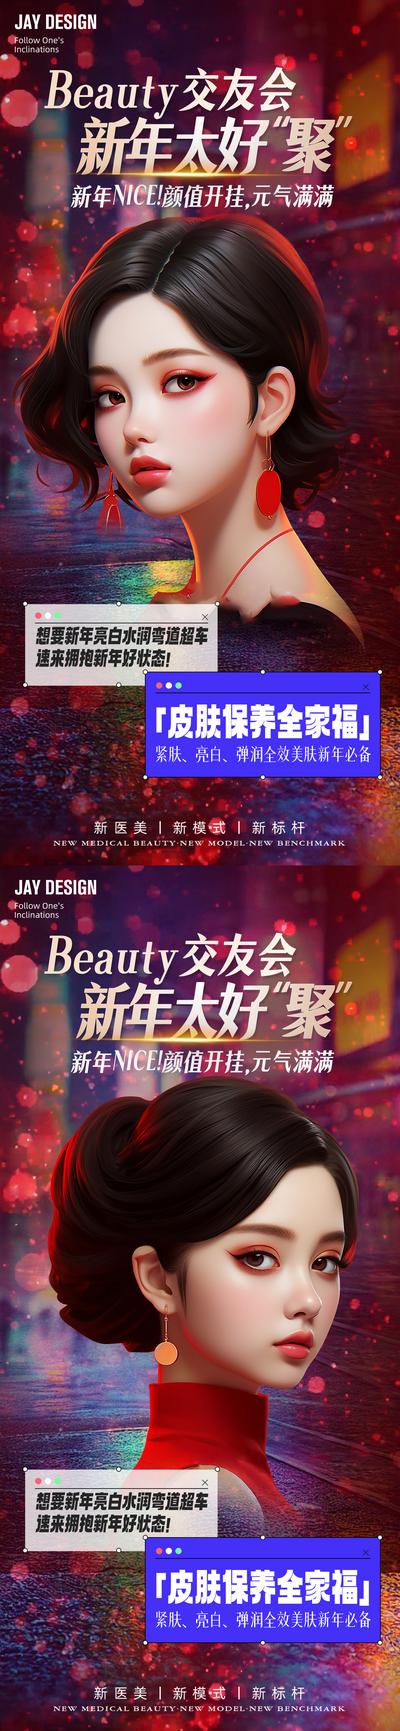 南门网 广告 海报 医美 人物 系列 新年 龙年 皮肤 杂志风 AI女 整形 中国传统节日 春节 除夕 时尚